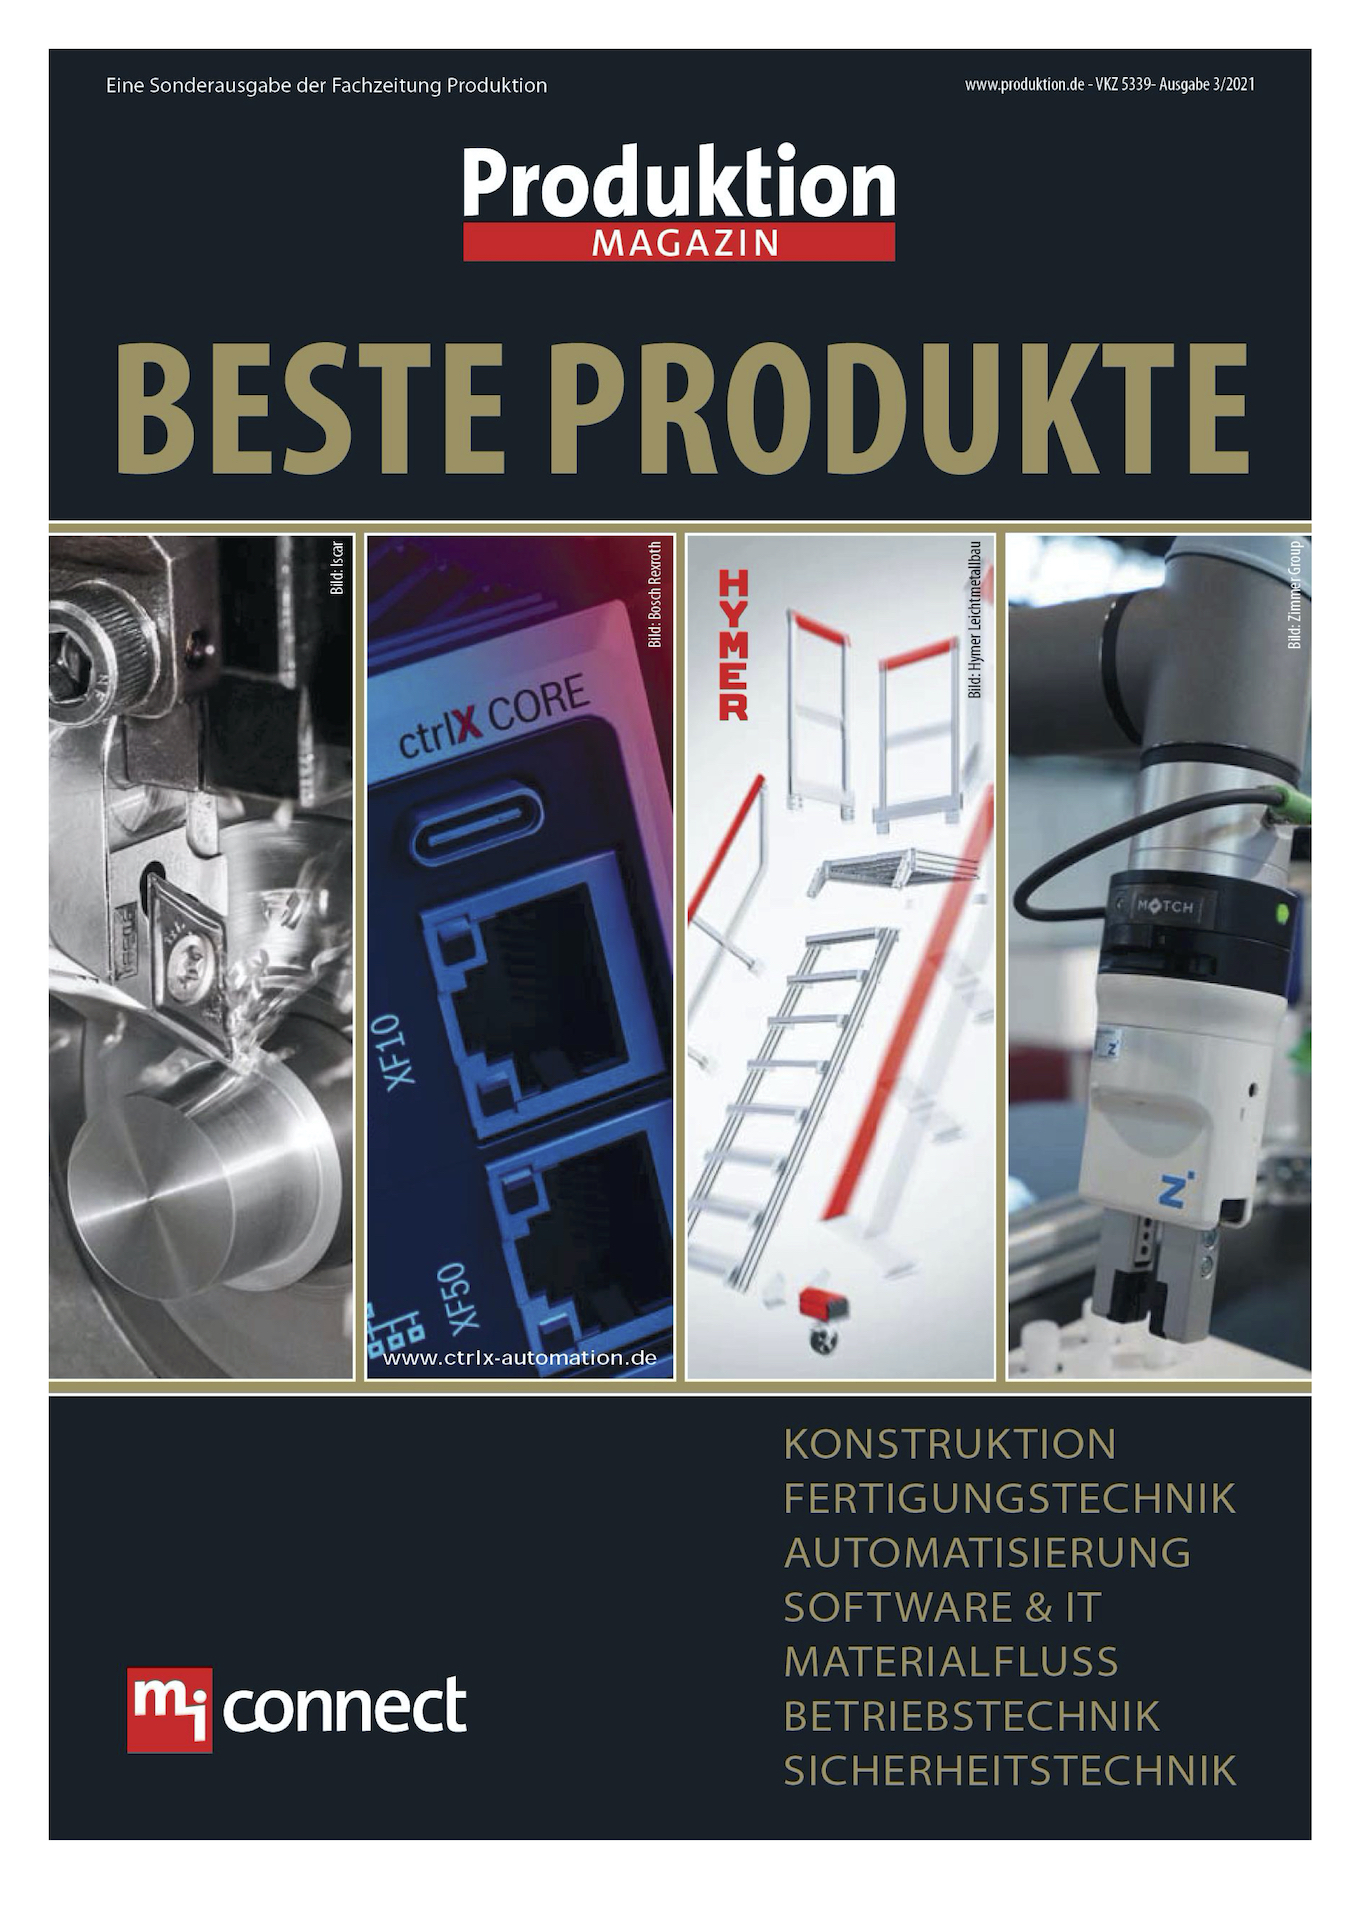 Der Leiritz Werkzeugwender Tool Mover ProTECH wurde in dem Fachmagazin Produktion unter die besten Produkte gewählt.